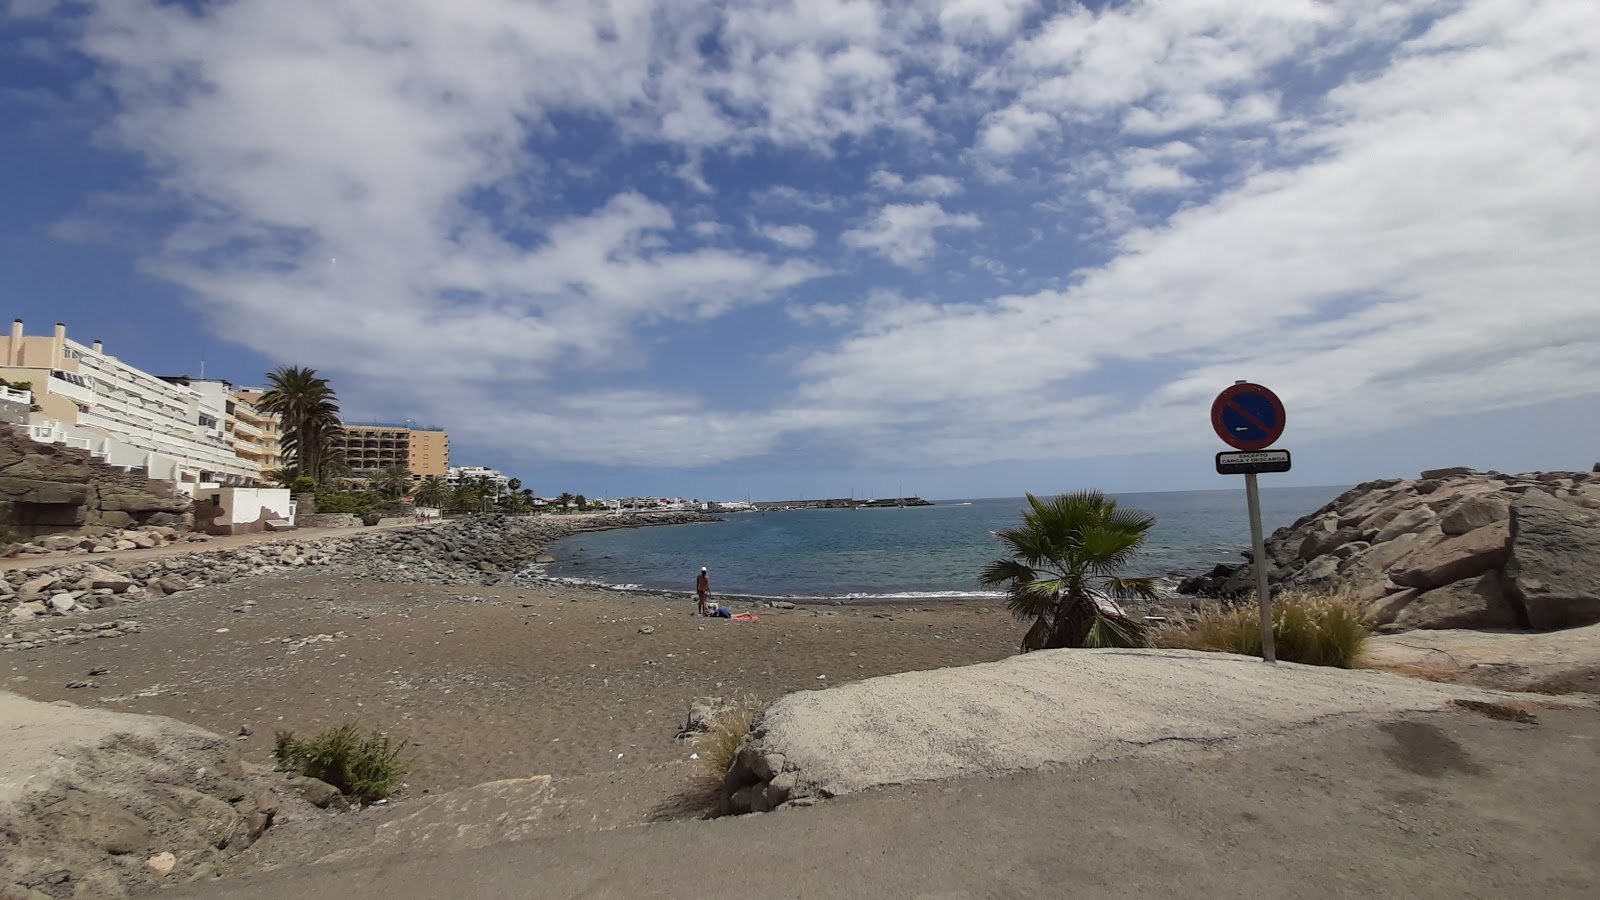 Playa La Carrera'in fotoğrafı siyah kum ve çakıl yüzey ile